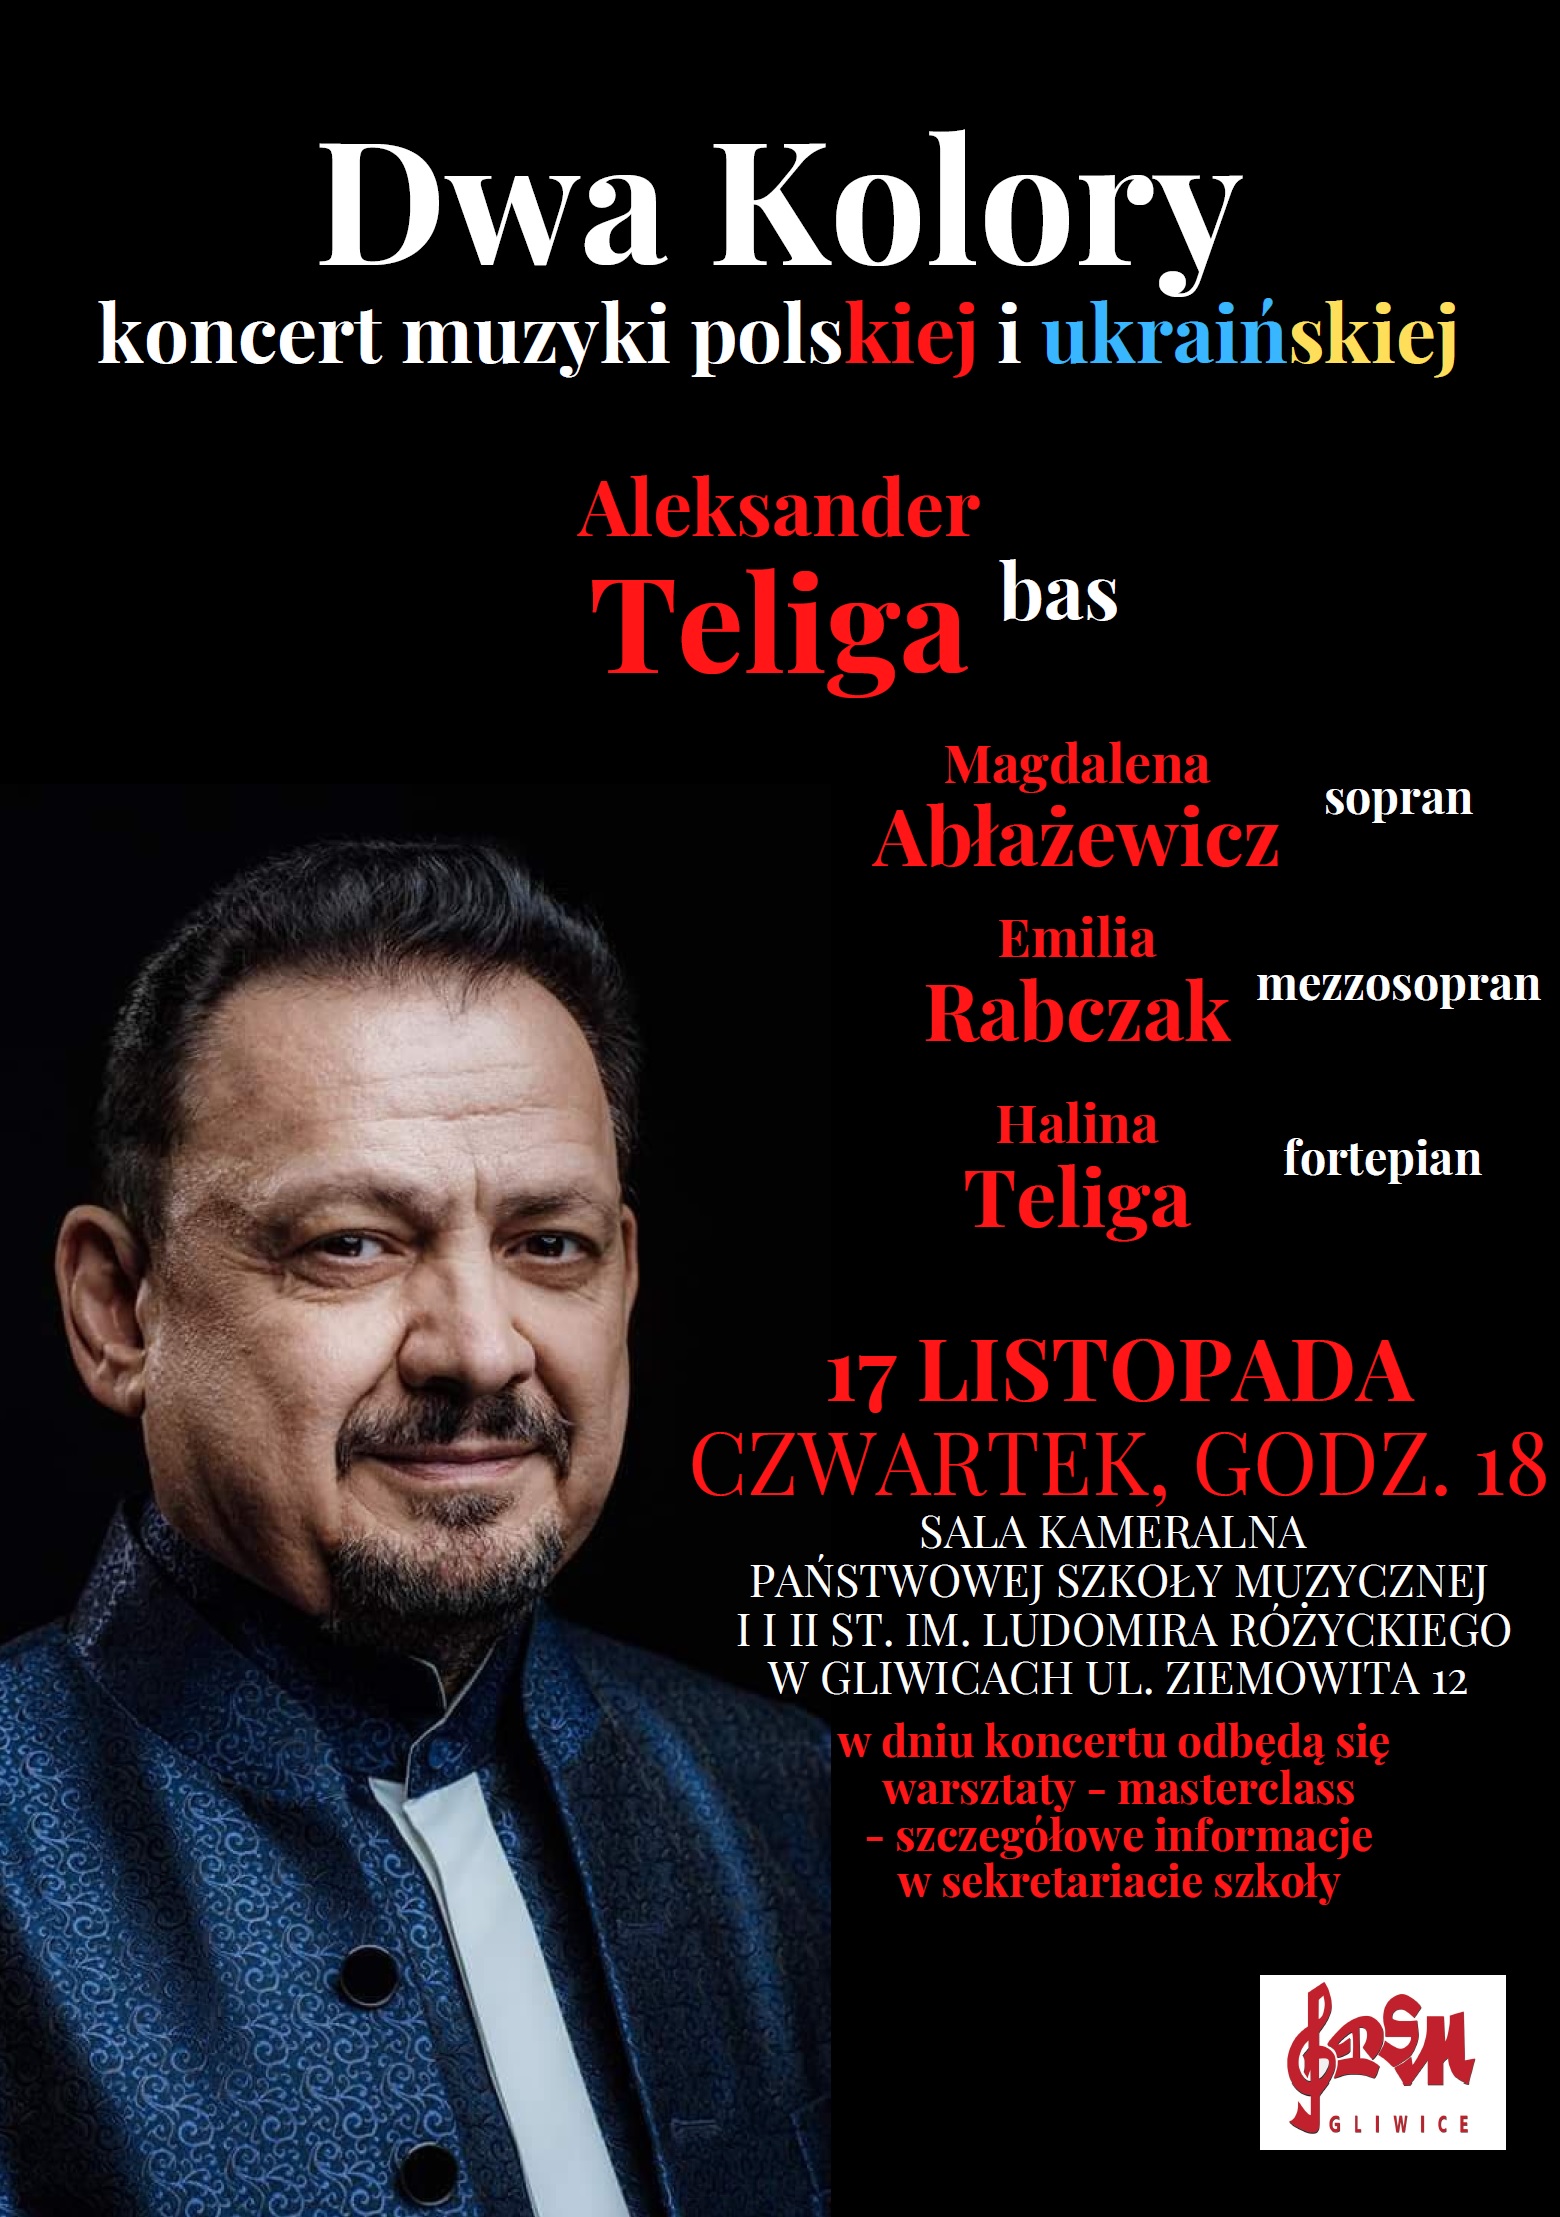 Dwa Kolory - koncert muzyki polskiej i ukraińskiej